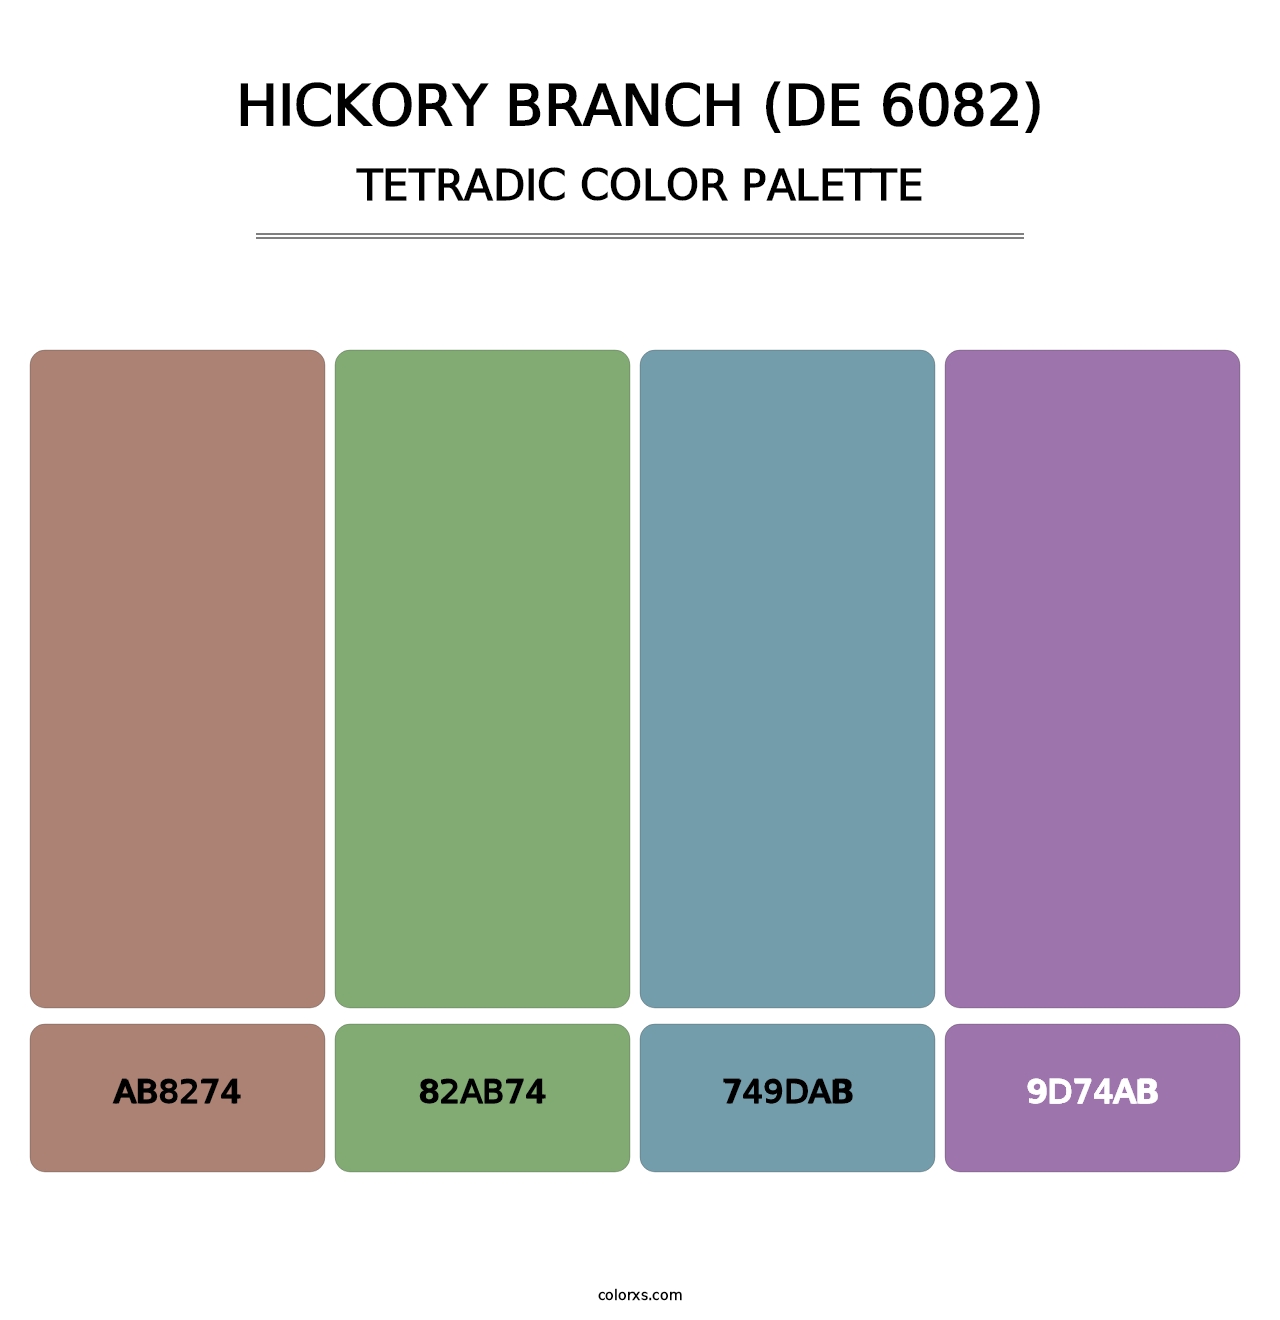 Hickory Branch (DE 6082) - Tetradic Color Palette